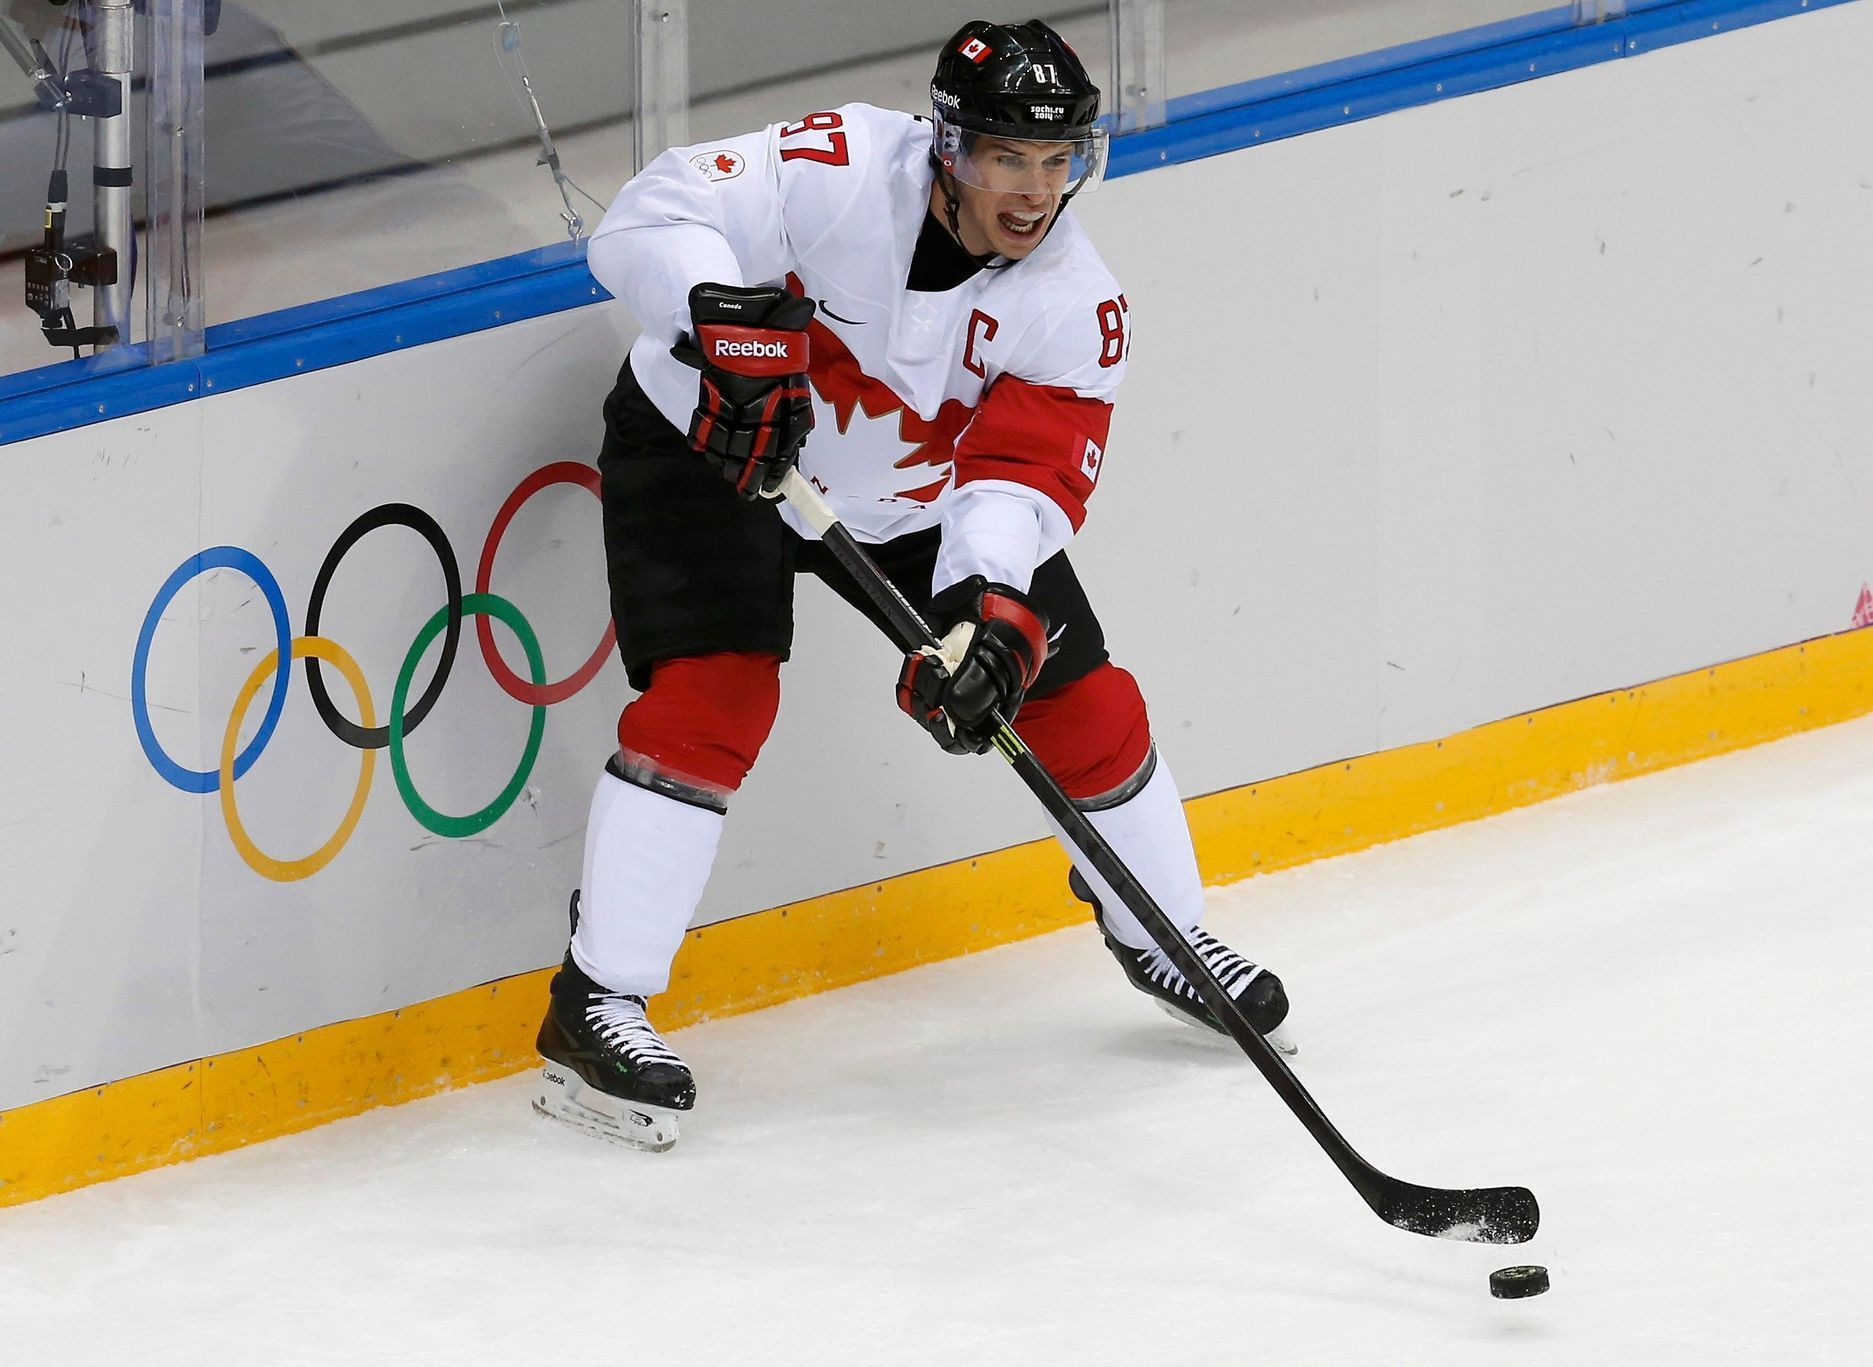 Kanada - Lotyšsko: Sidney Crosby